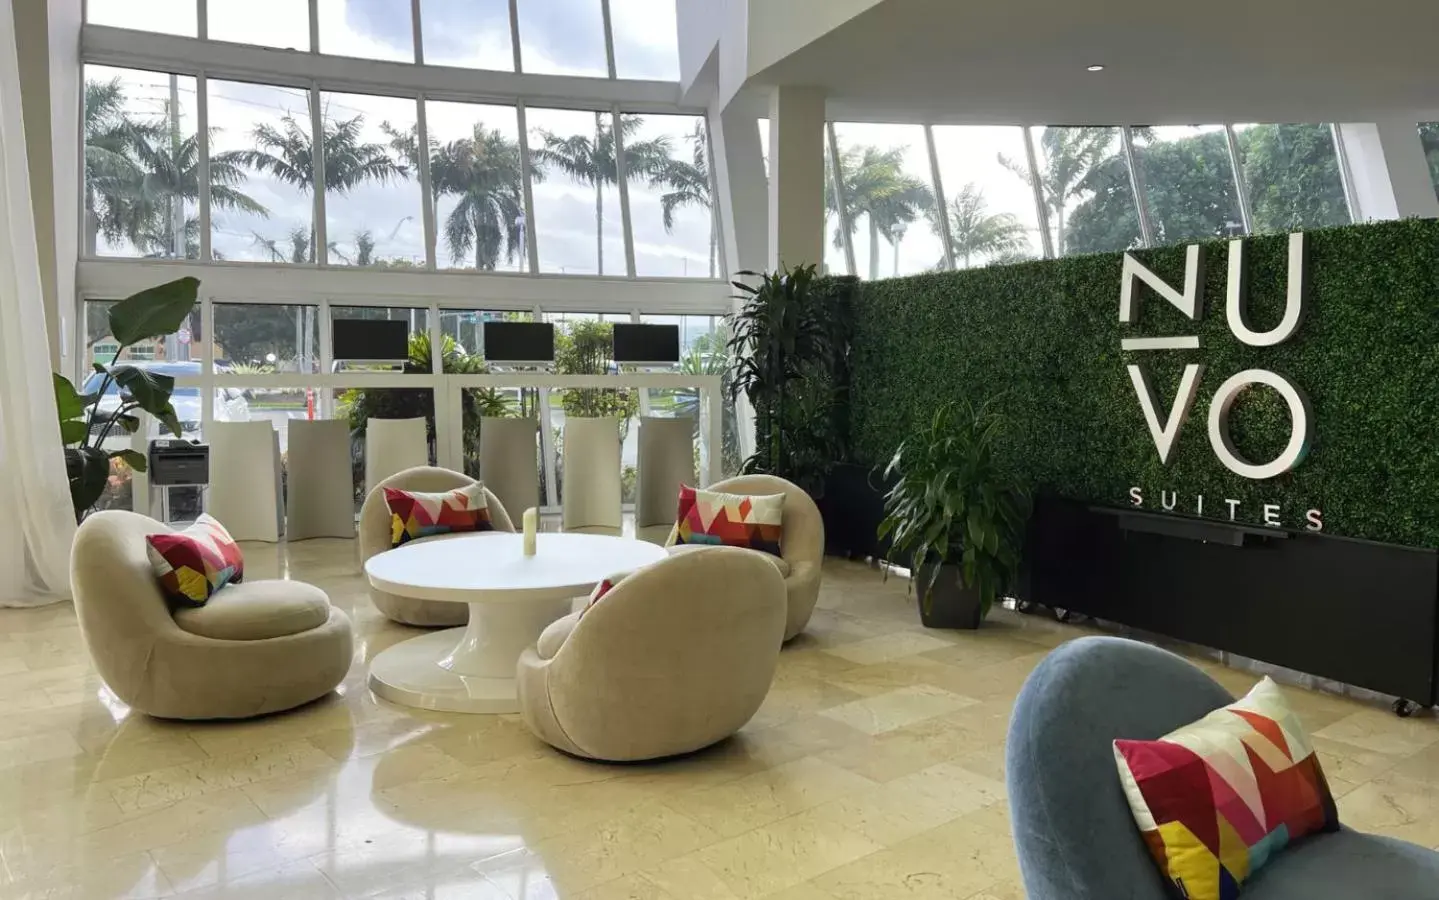 Lobby or reception in Nuvo Suites Hotel - Miami Doral